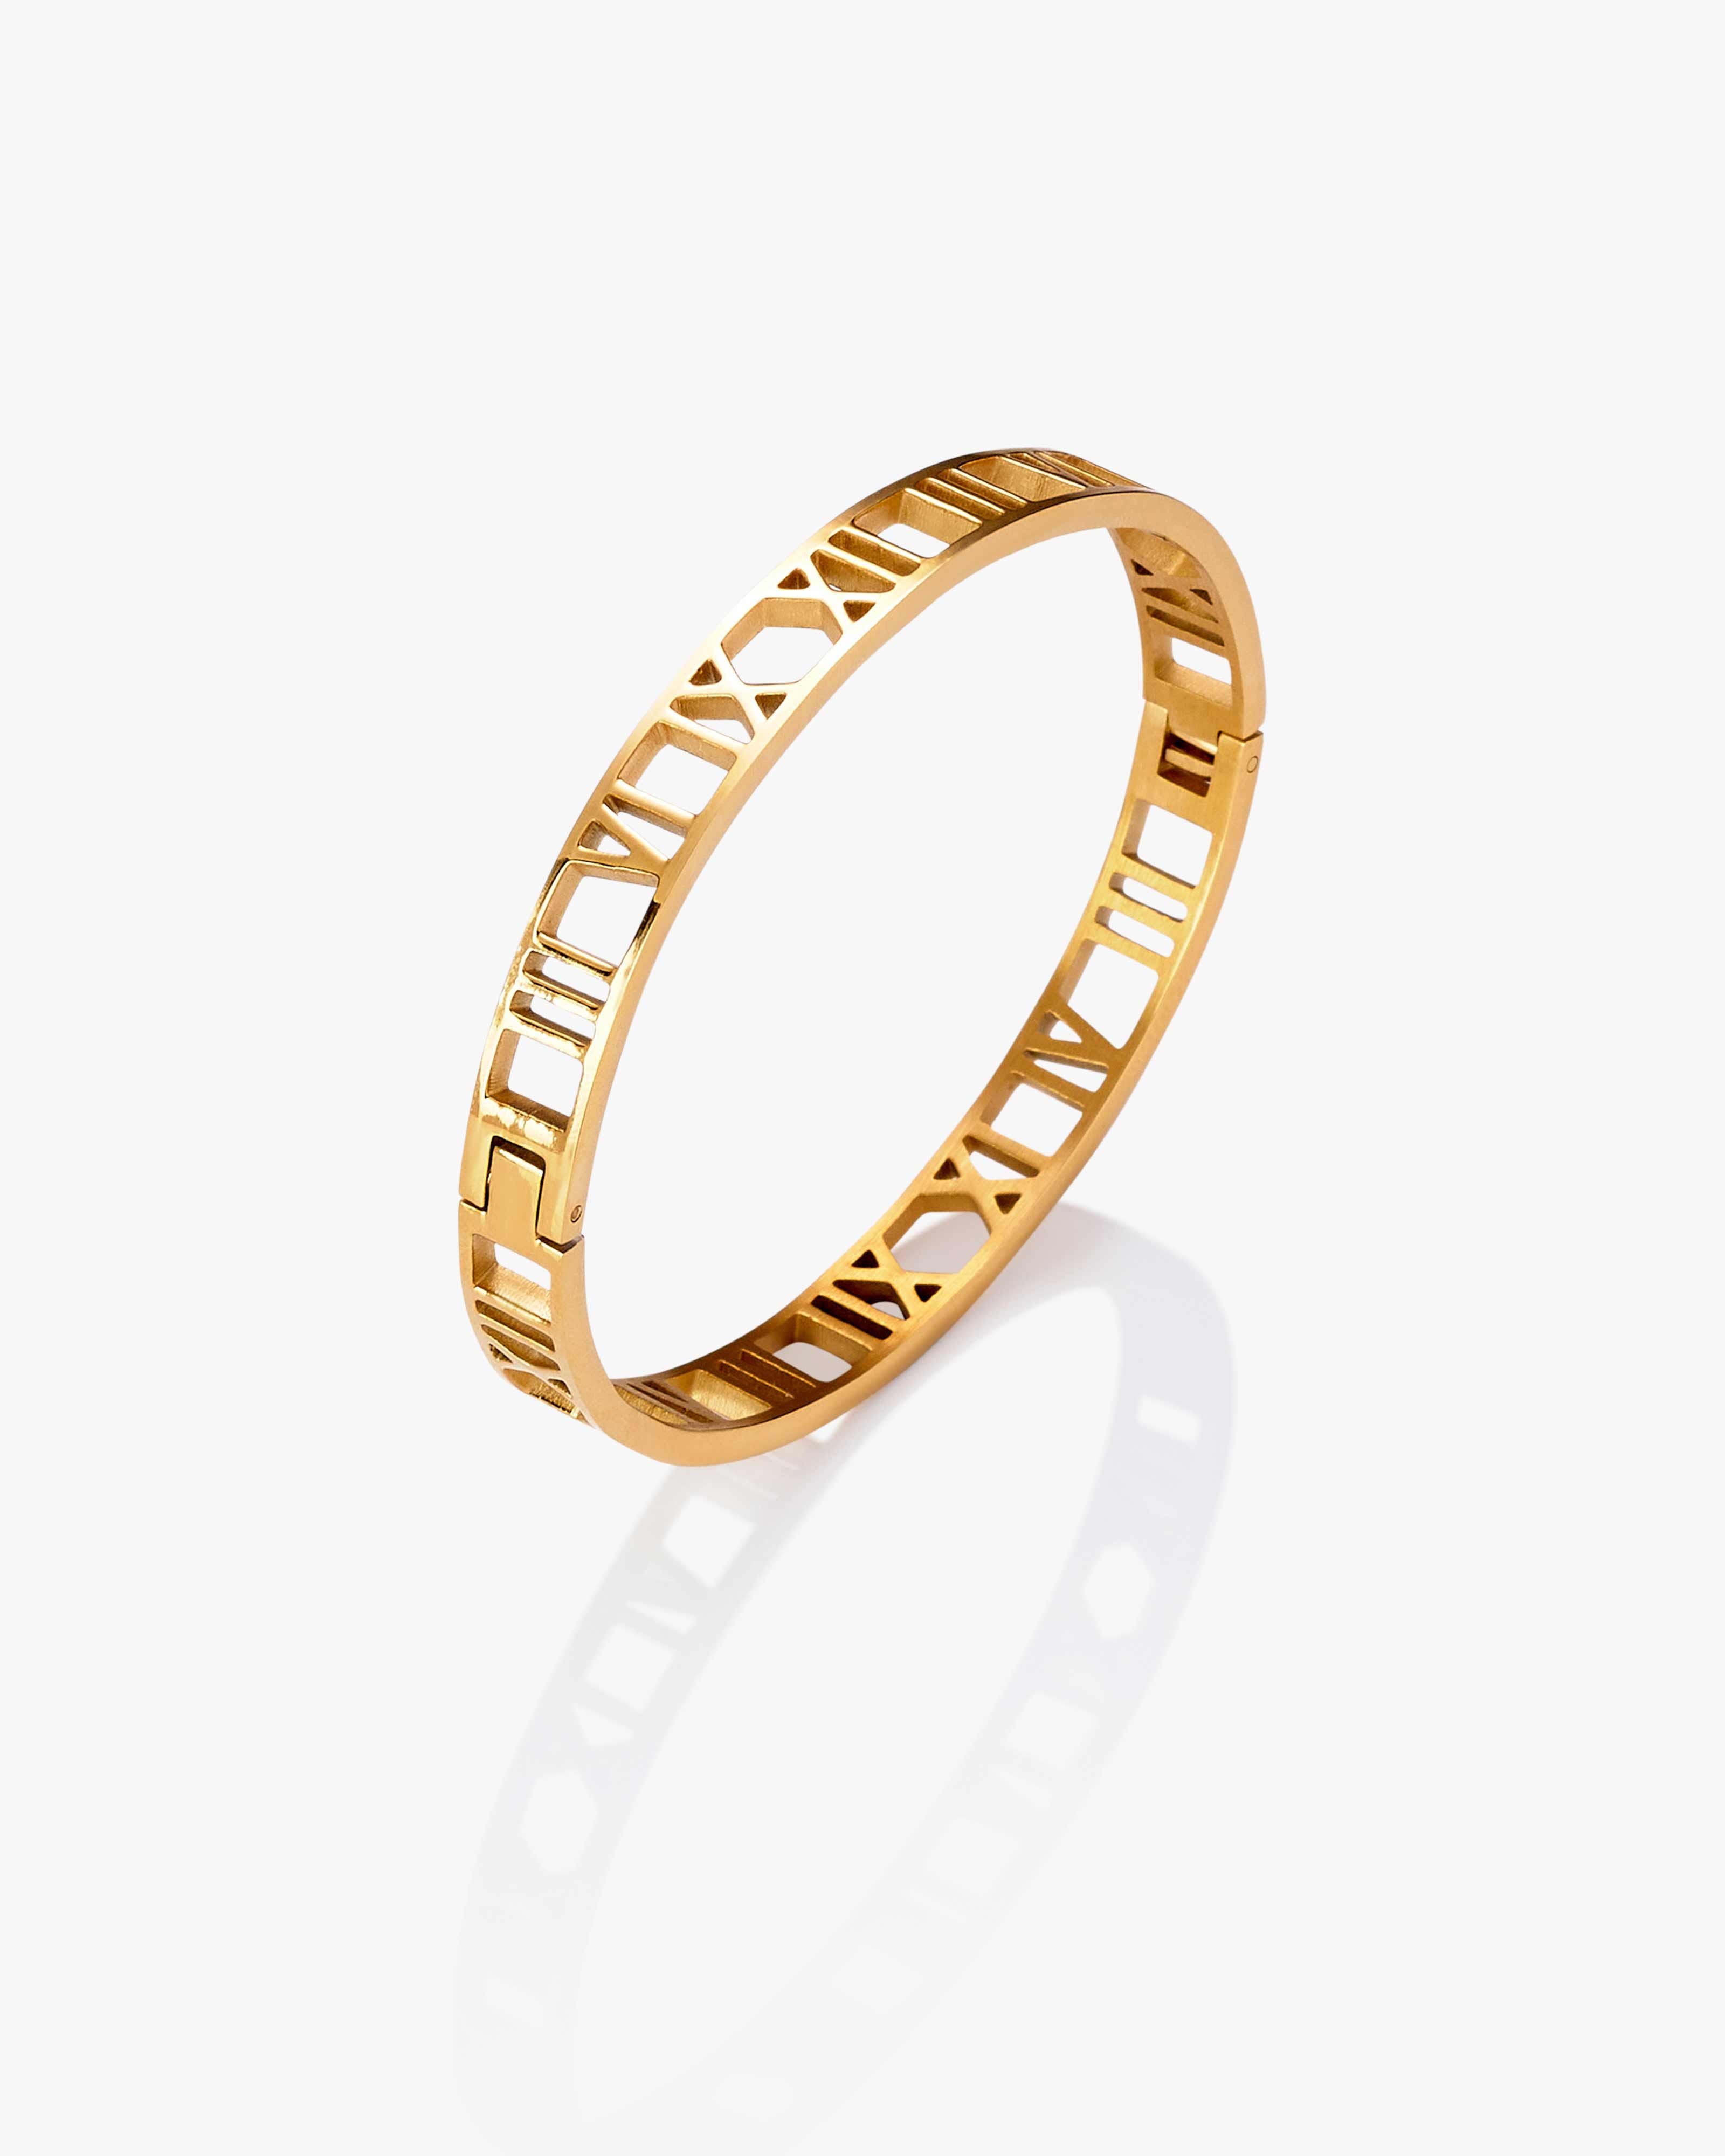 Gold Roman Numeral Bracelet